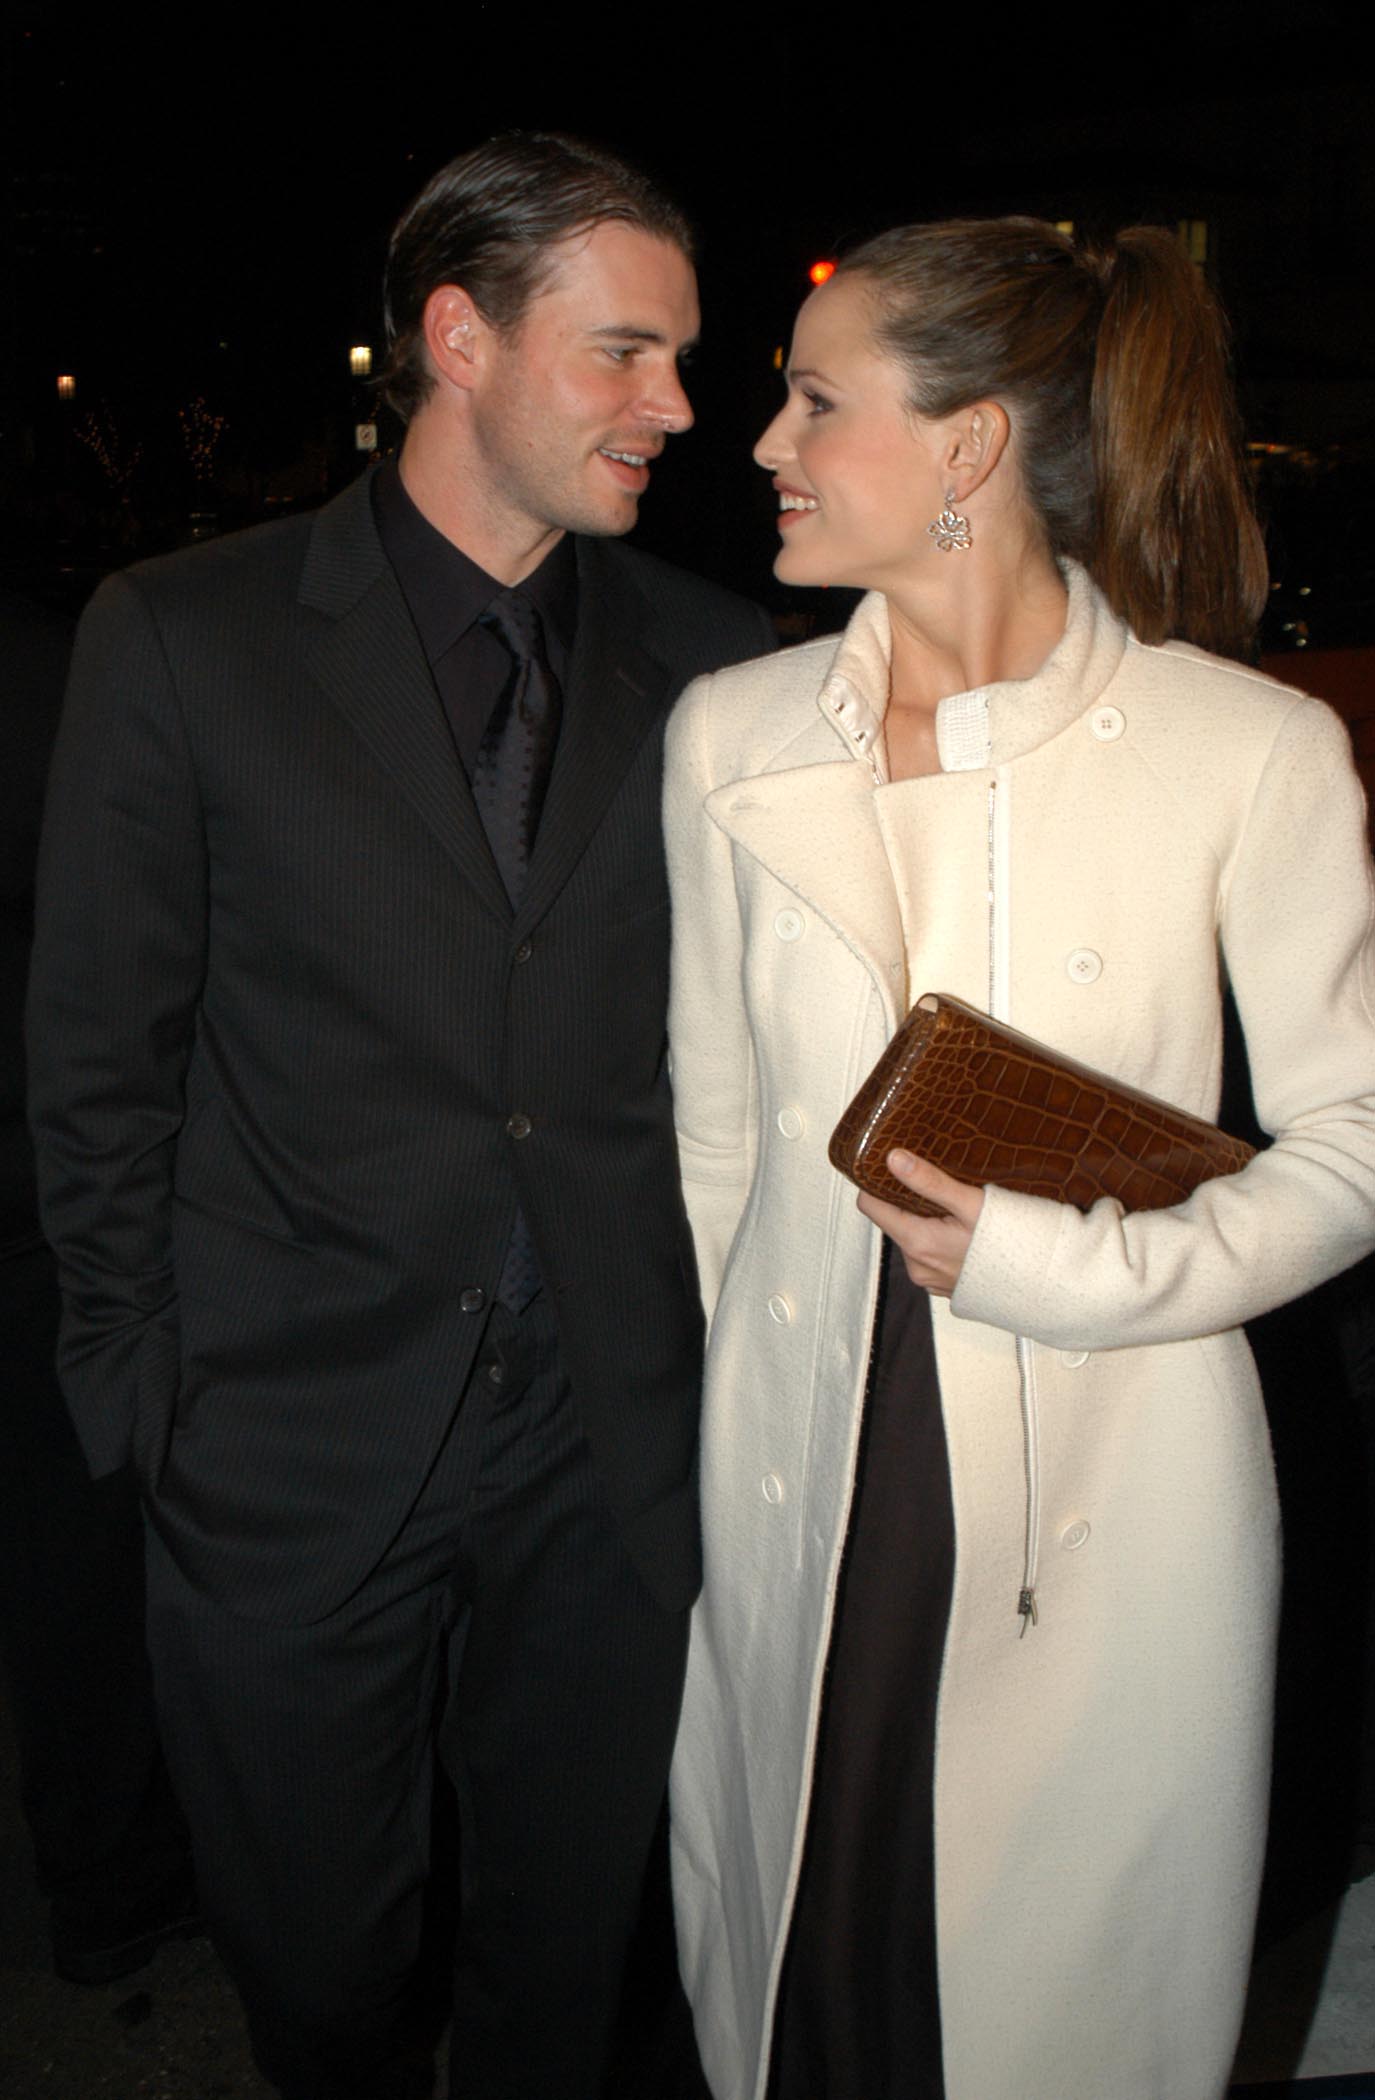 Scott Foley et Jennifer Garner à la première de "Catch Me If You Can", 2002 | Source : Getty Images